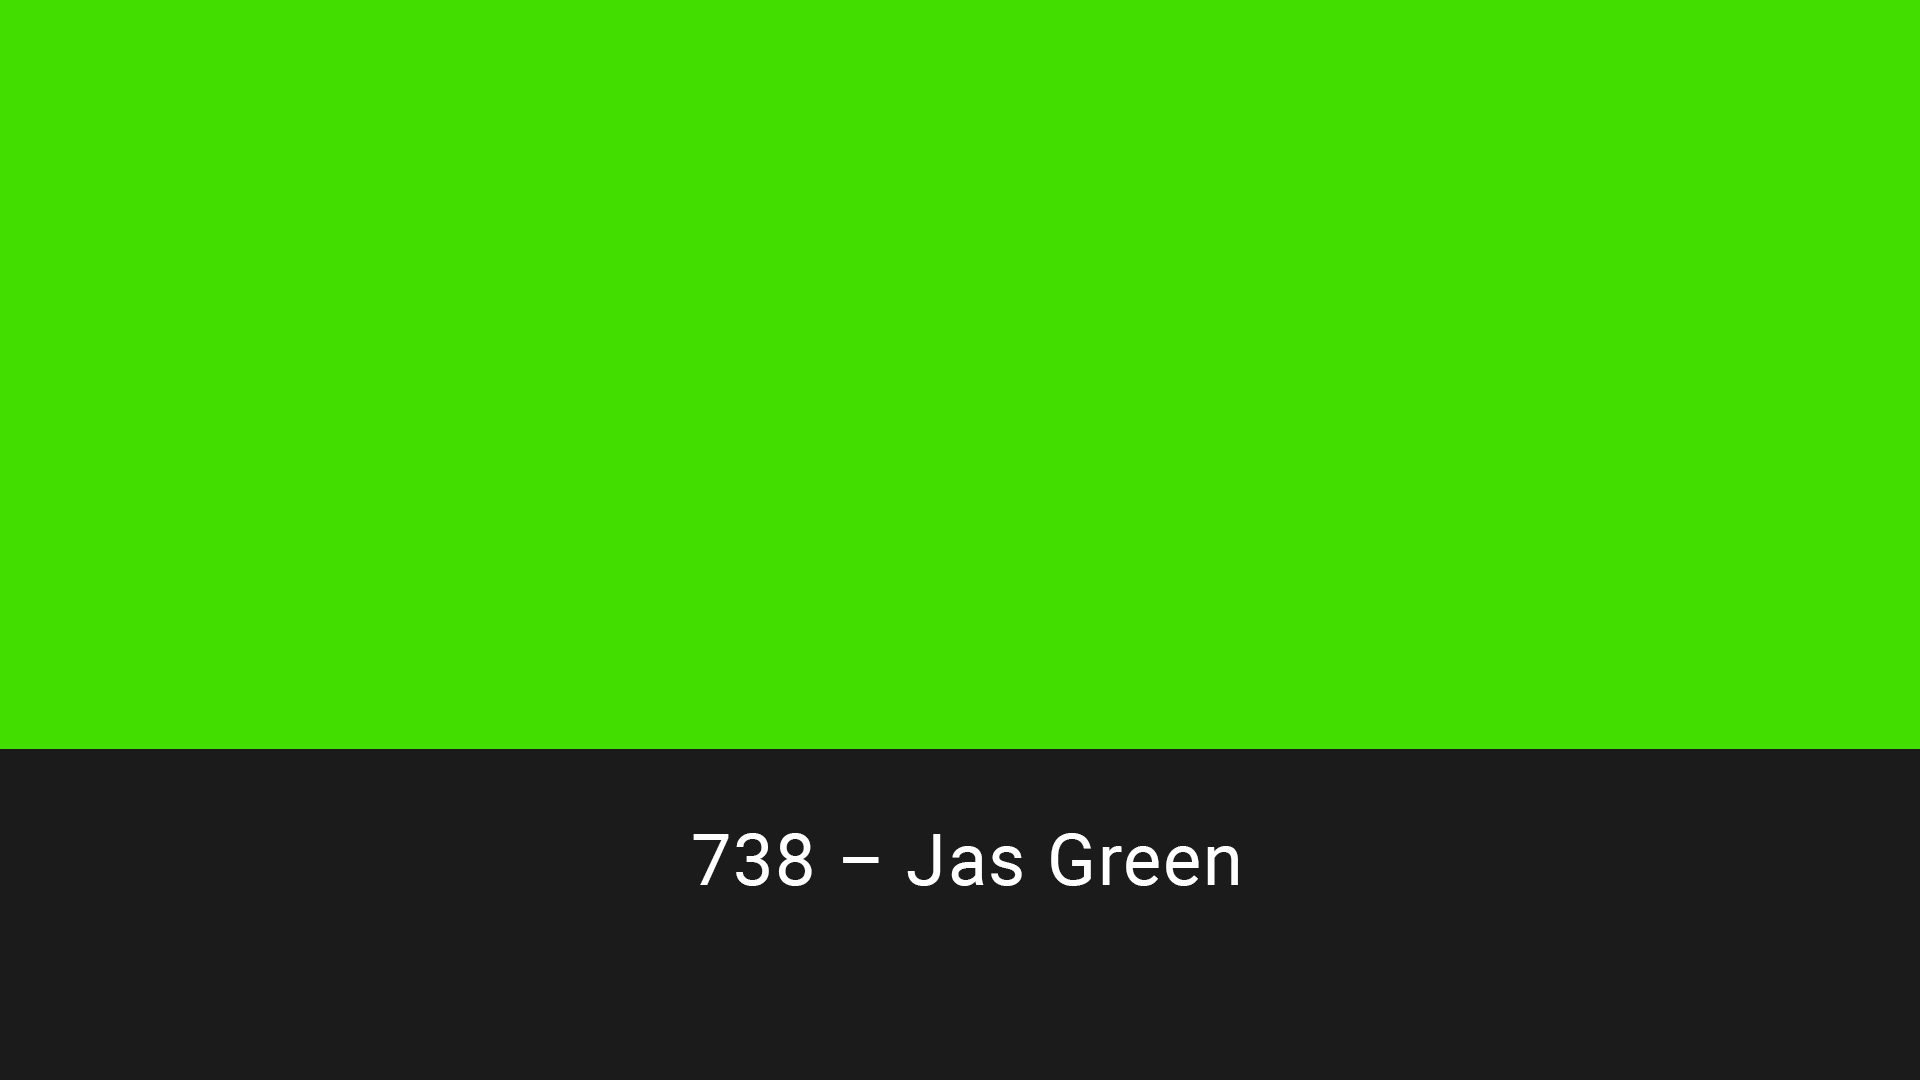 Cotech filters 738 Jas Green